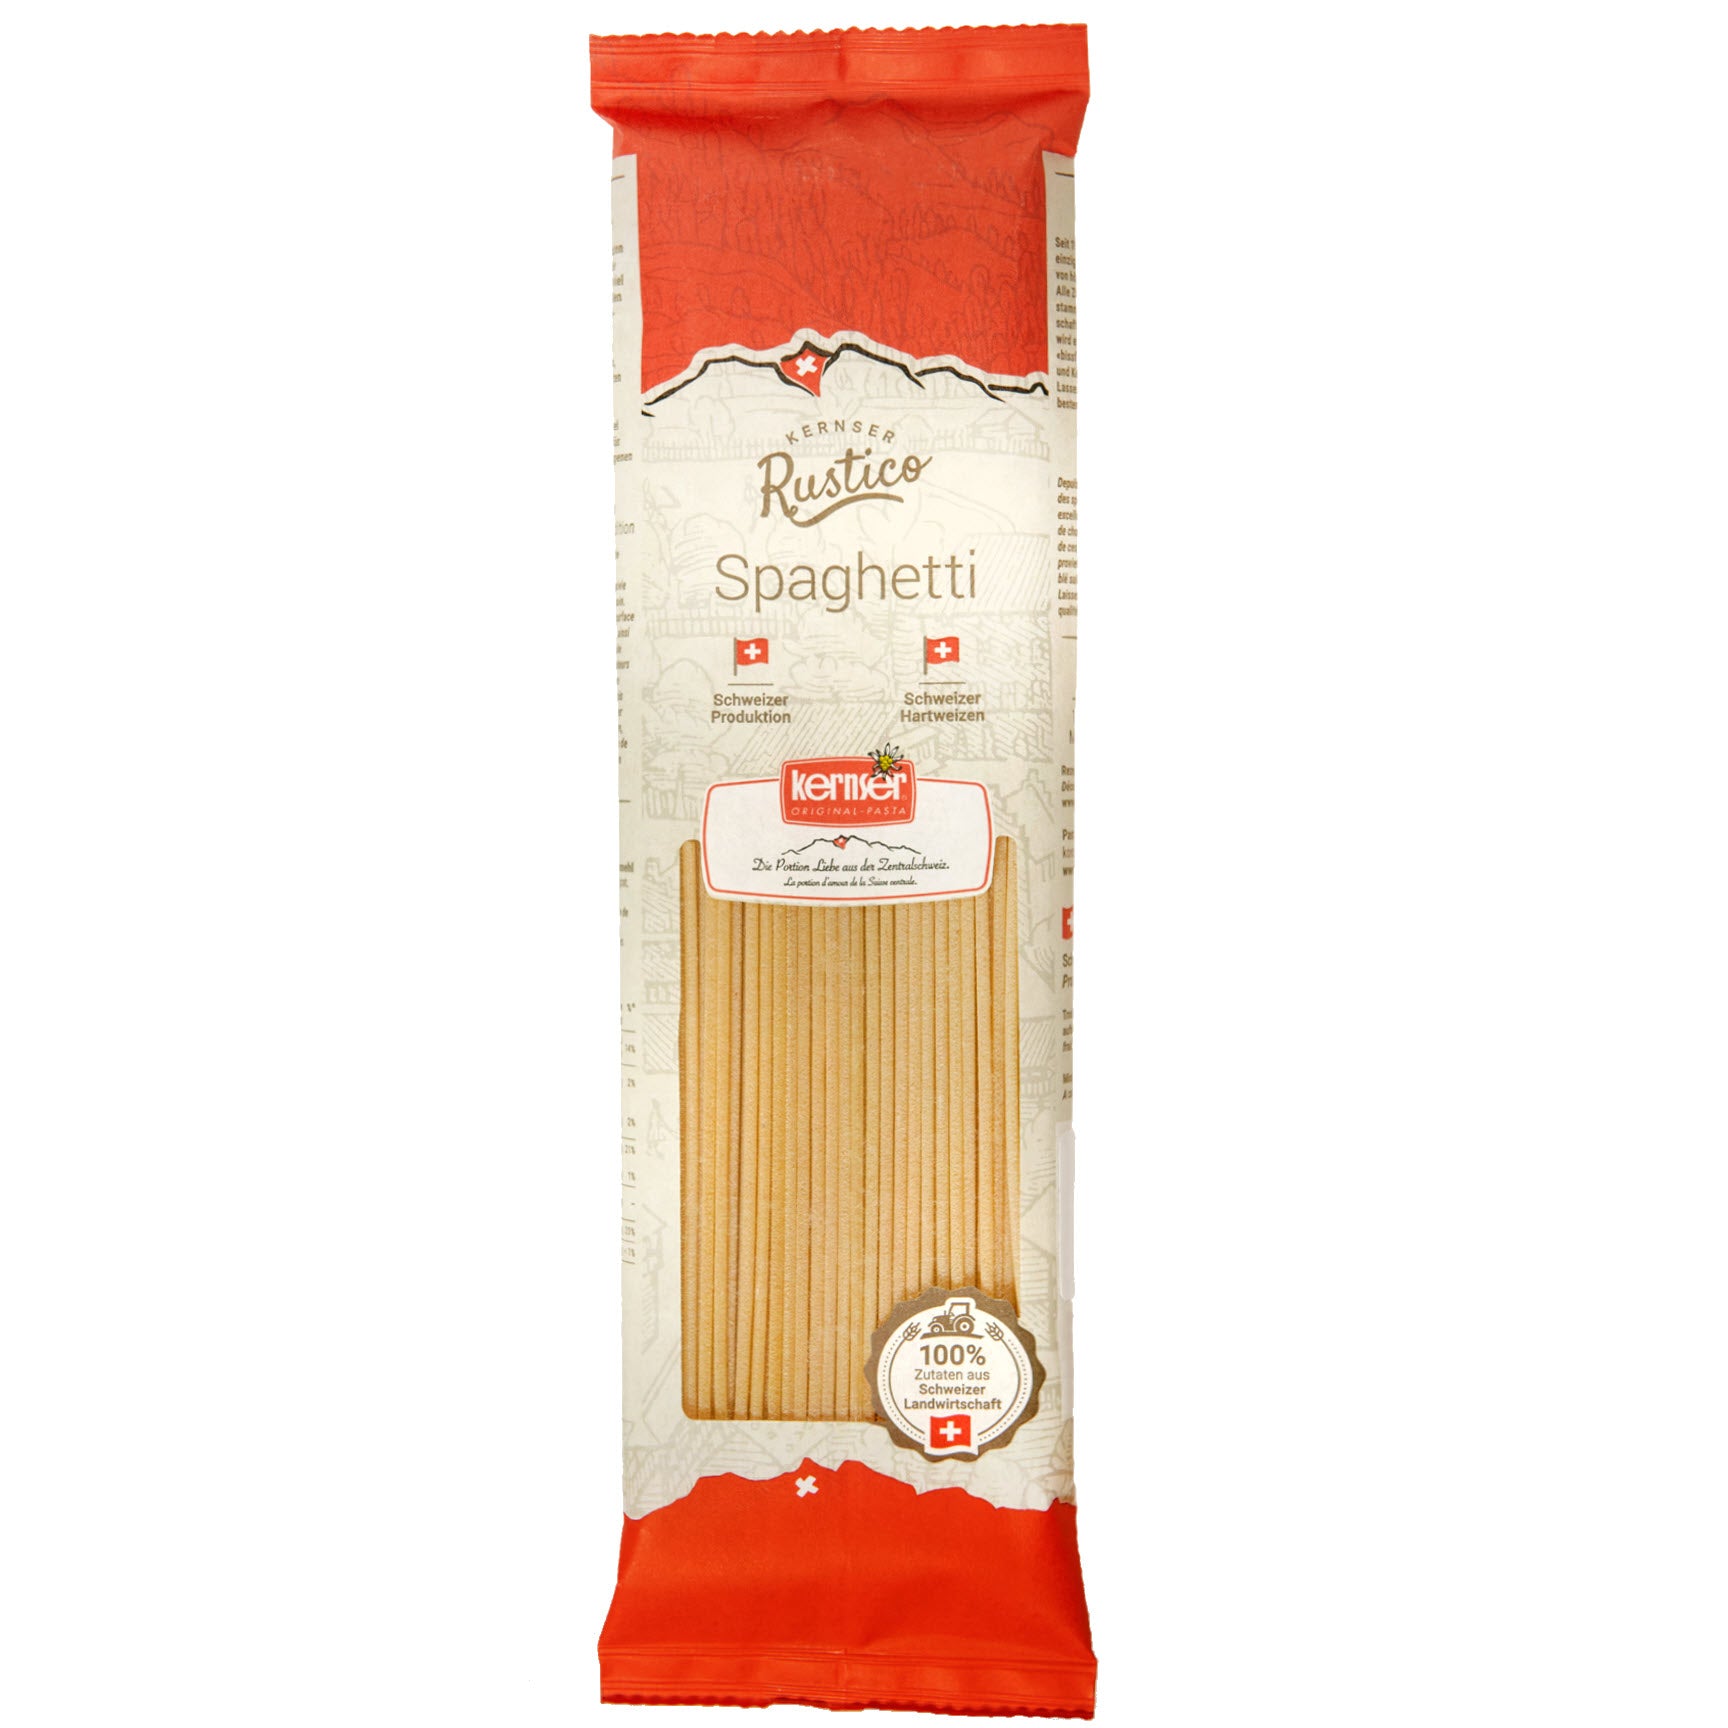 Image of Rustico Spaghetti - 400g